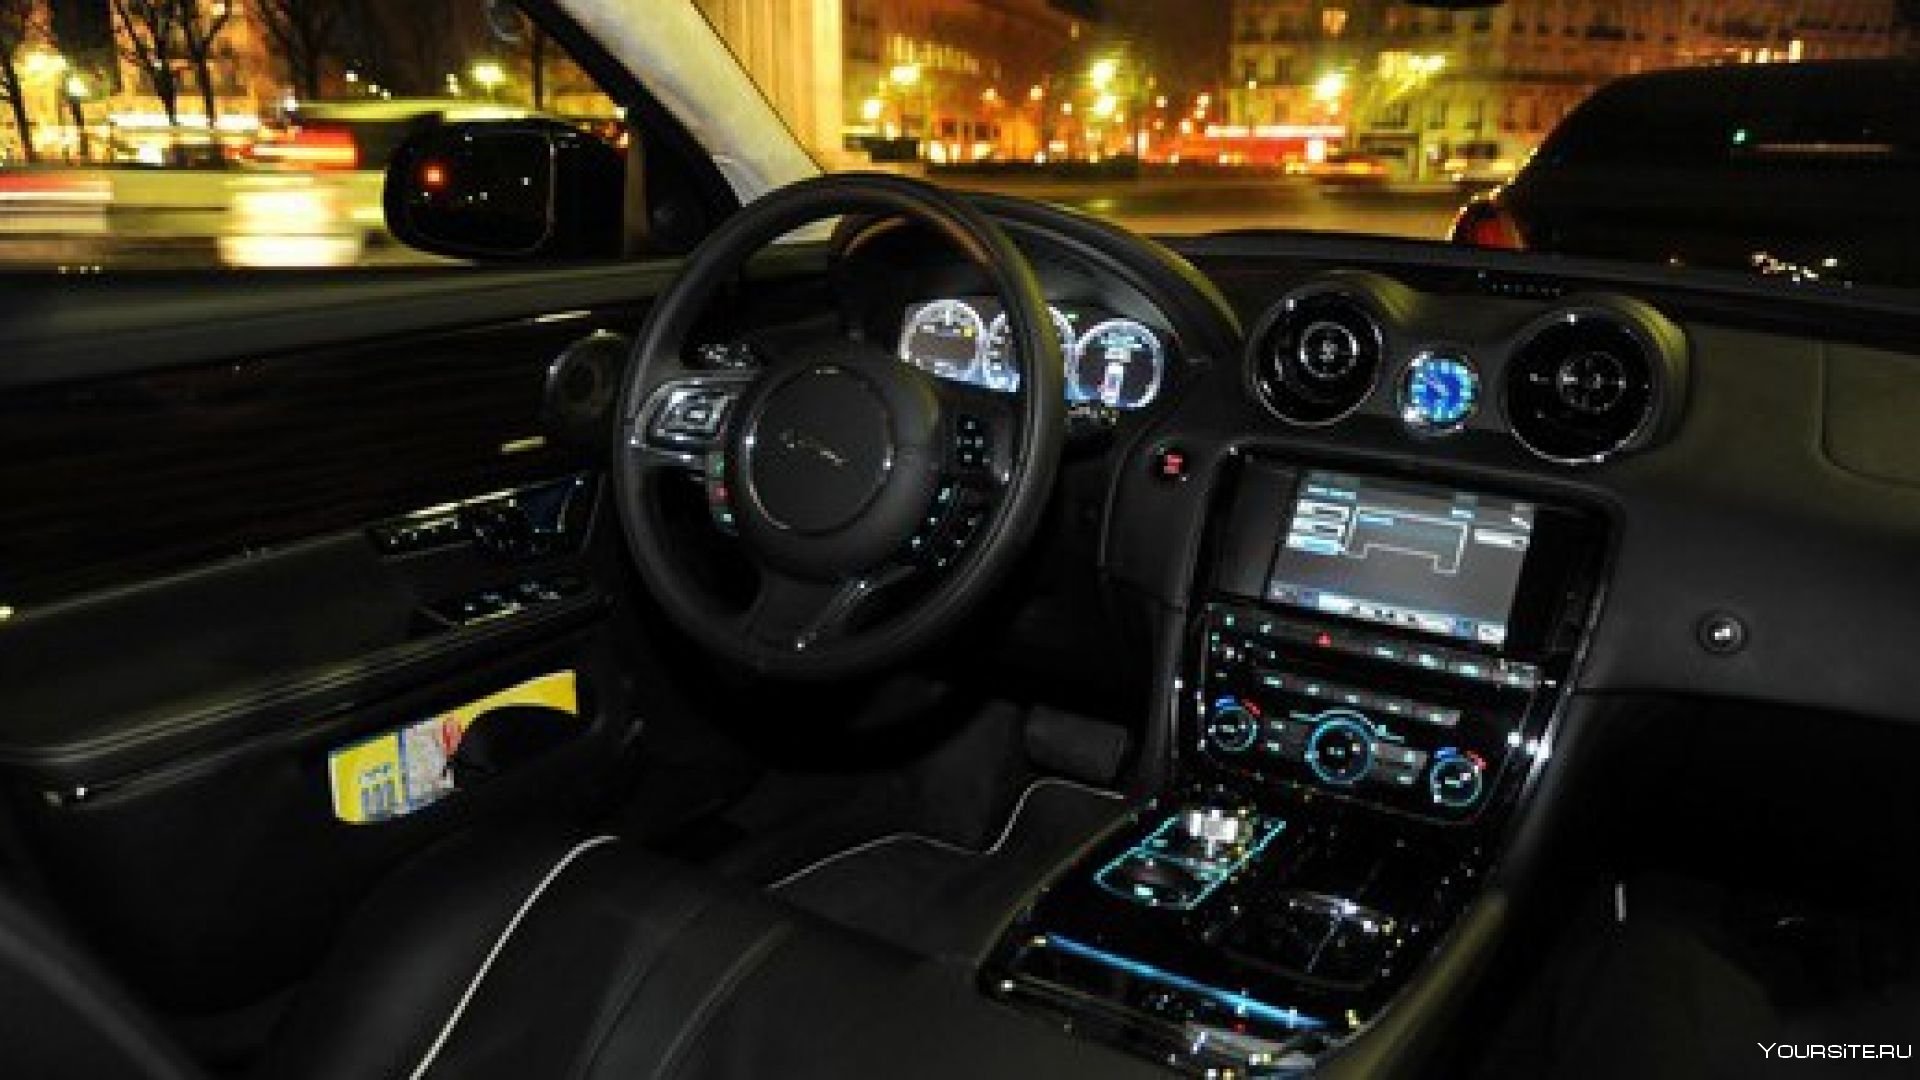 Включи внутри машины. Jaguar XJ 2010 салон ночью. Jaguar XJ 2010 салон. Jaguar XJ 2012 салон ночью. Jaguar XJ 2010 салон подсветка.